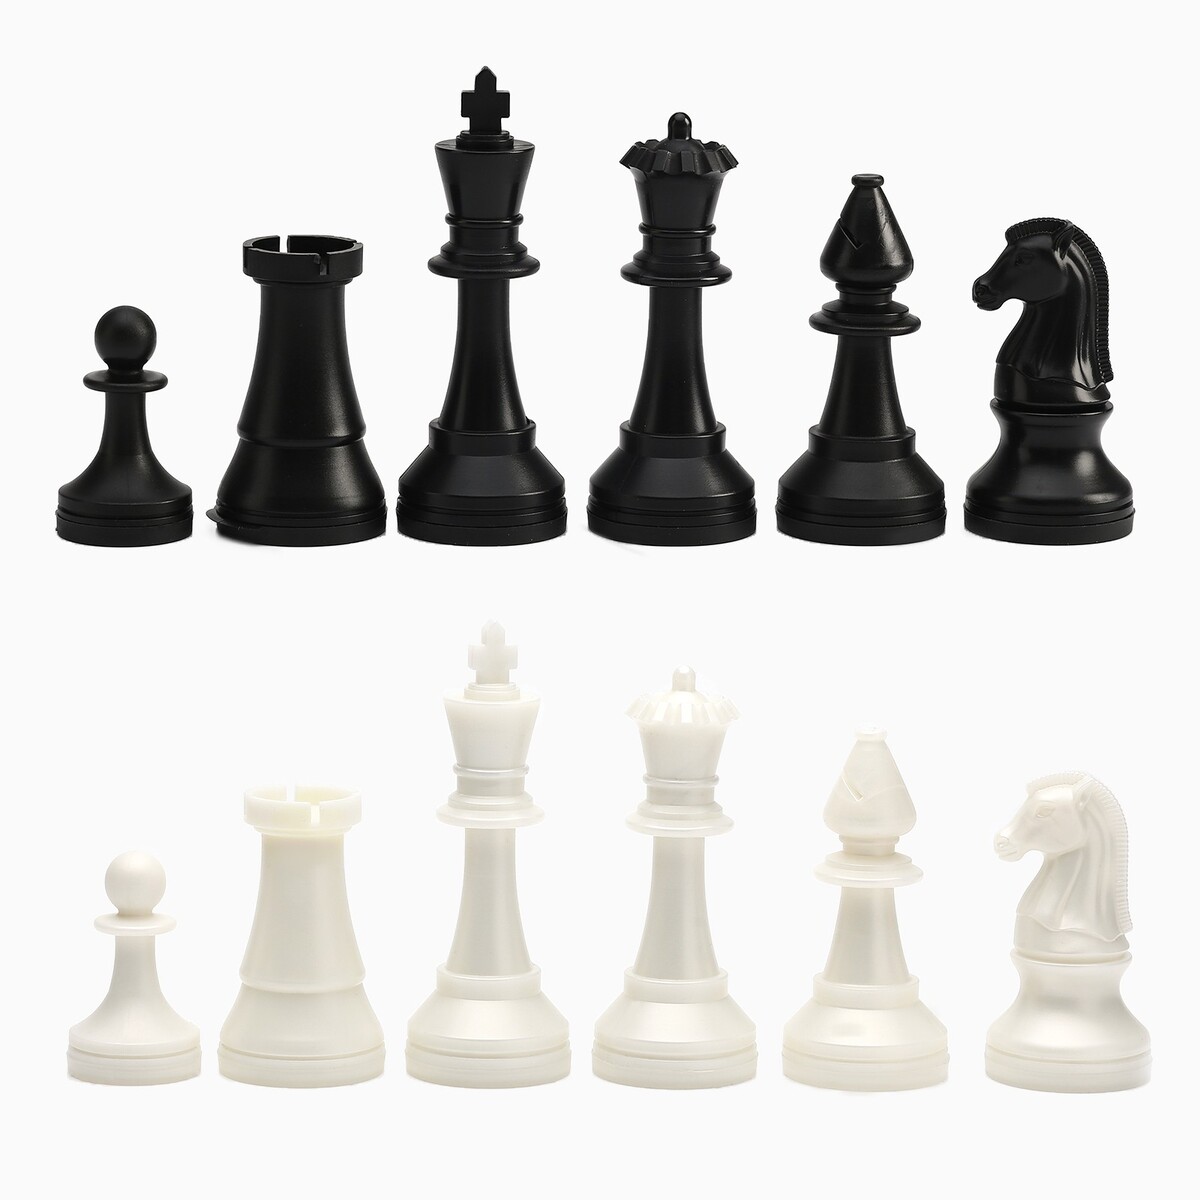 Шахматные фигуры турнирные, пластик, король h-10.5 см, пешка h-5 см шахматные фигуры пластик король h 4 2 см пешка h 2 см